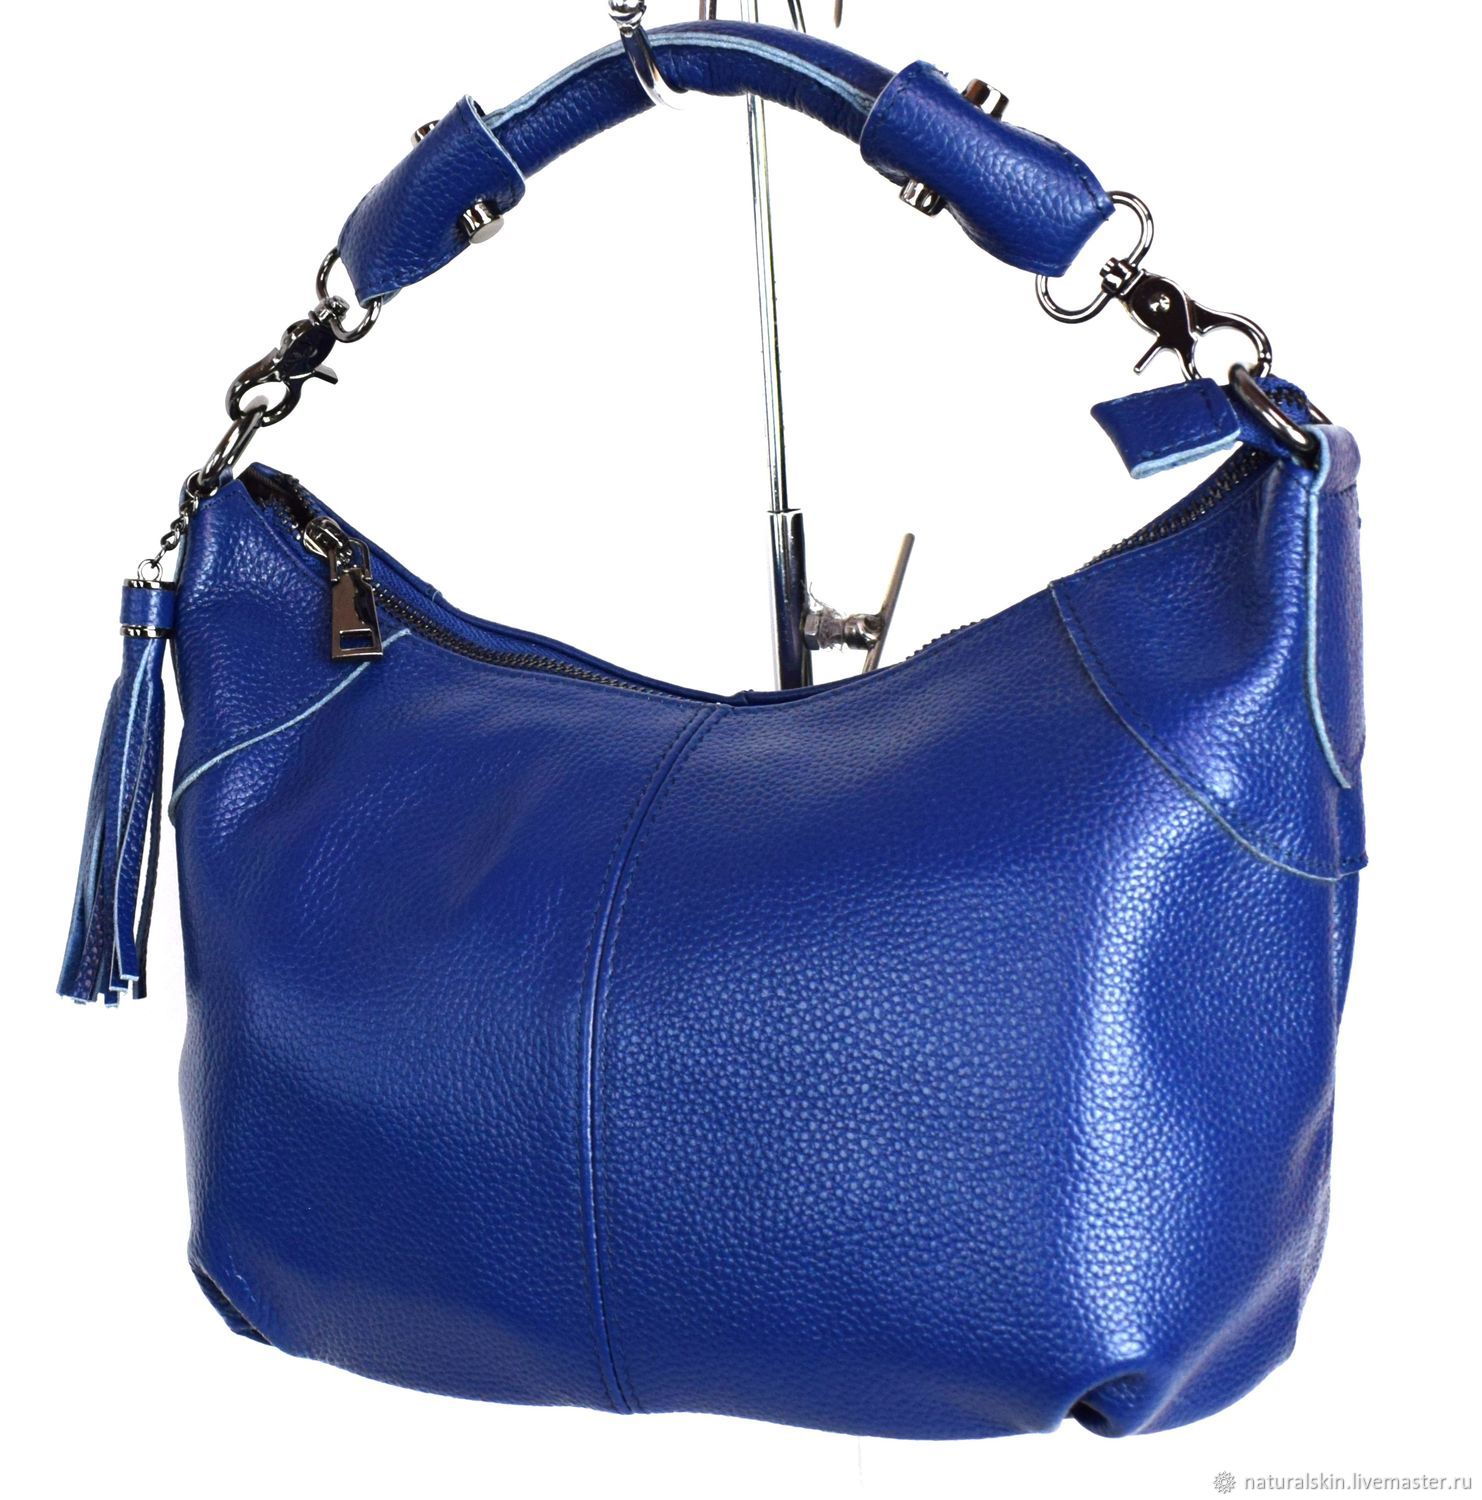 Купить голубую сумку женскую. Сумка двойная фабиани синяя. Сумка фабиани синяя. Голубая кожаная сумка «Адели». Сумка женская 1813 синяя.